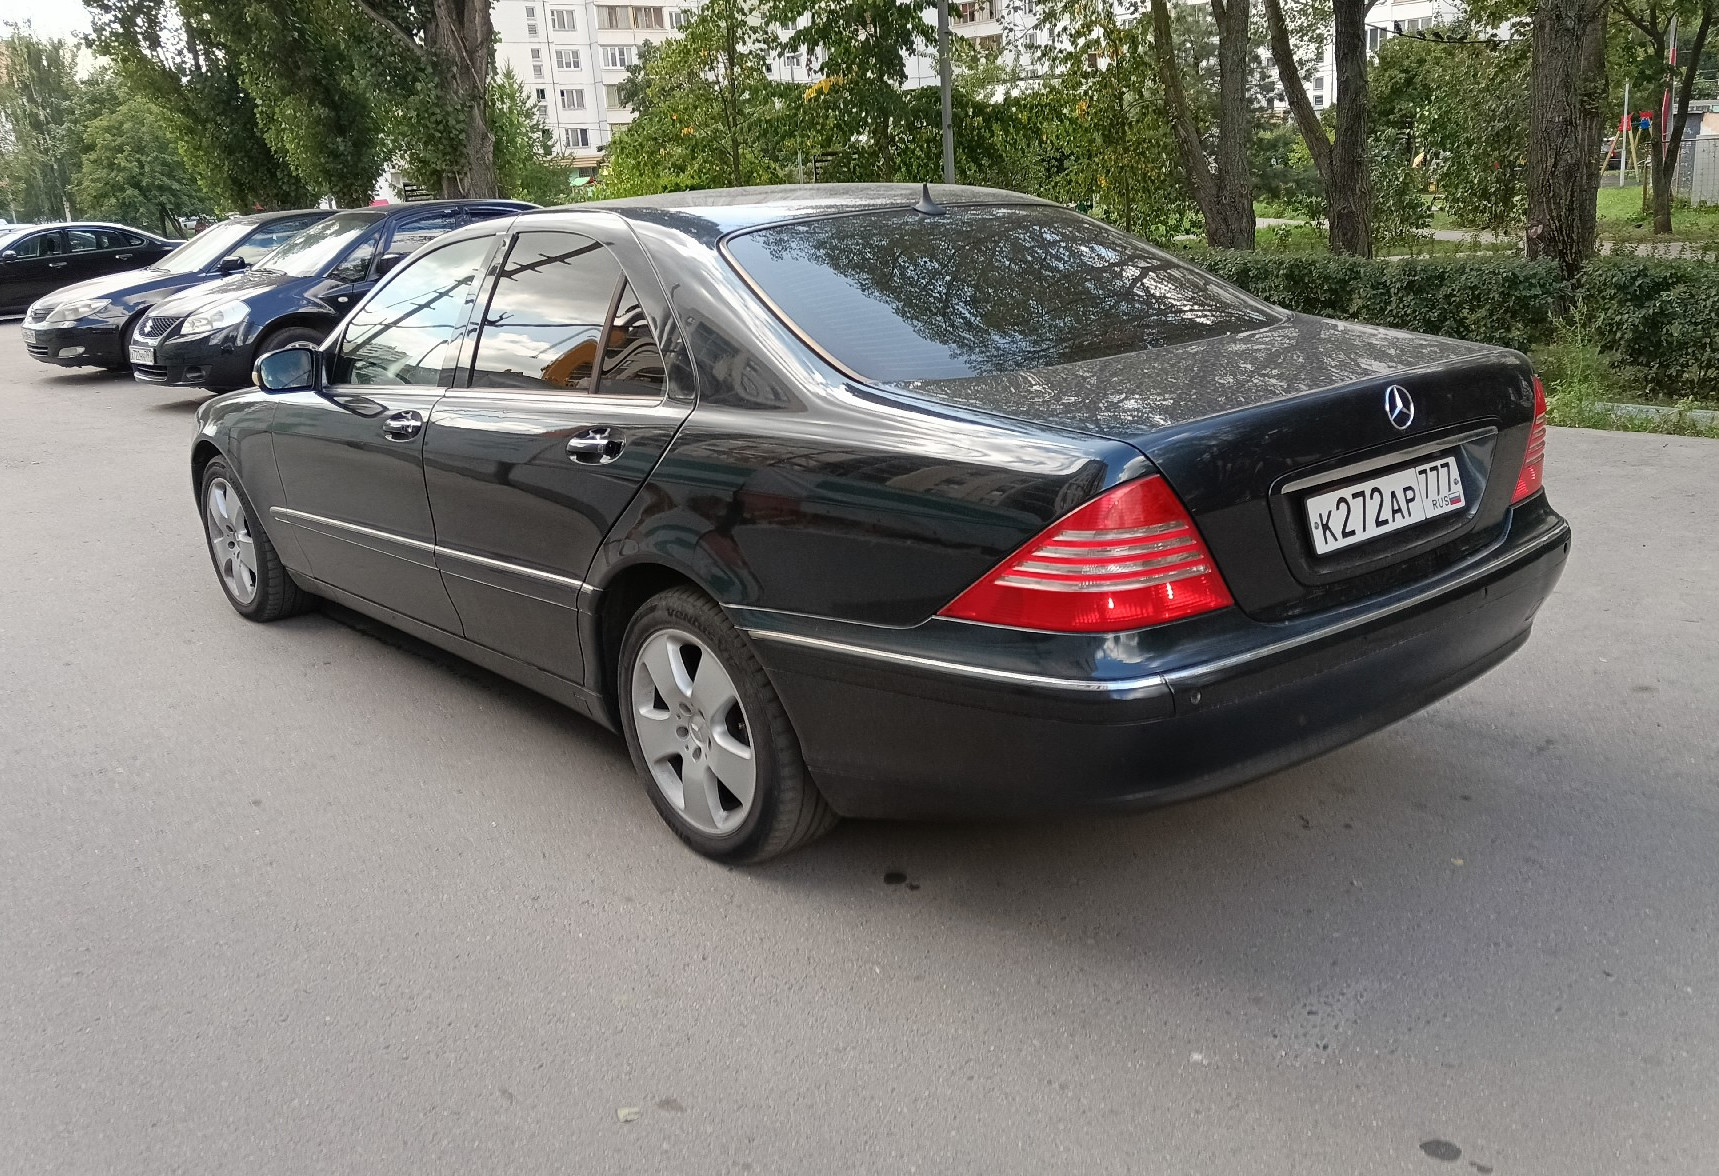 Аренда mercedes-benz s-klass стандарт класса 2002 года в городе Москва Люблино от 3300 руб./сутки, задний привод, двигатель: бензин, объем 3.2 литра, ОСАГО (Мультидрайв), без водителя, недорого, вид 3 - RentRide